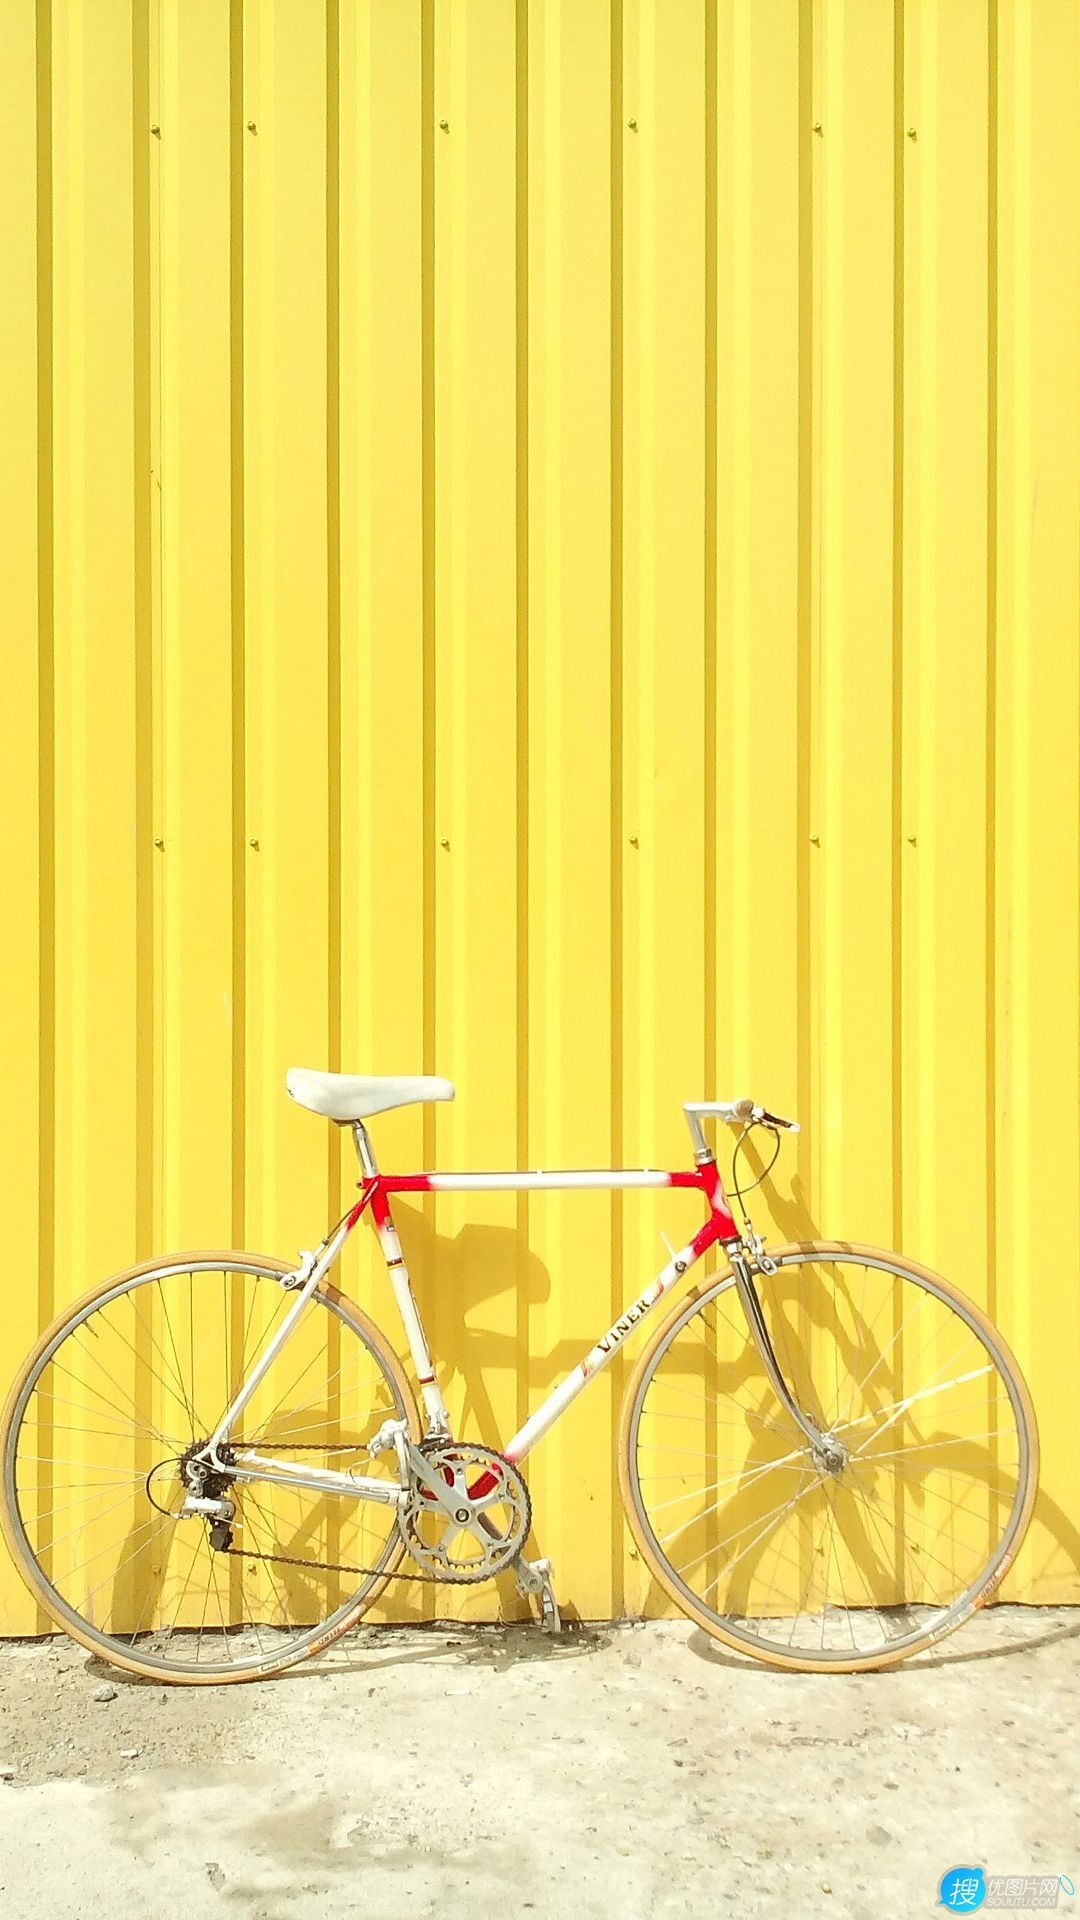 停靠在黄色背景墙前的自行车唯美简约手机壁纸图片